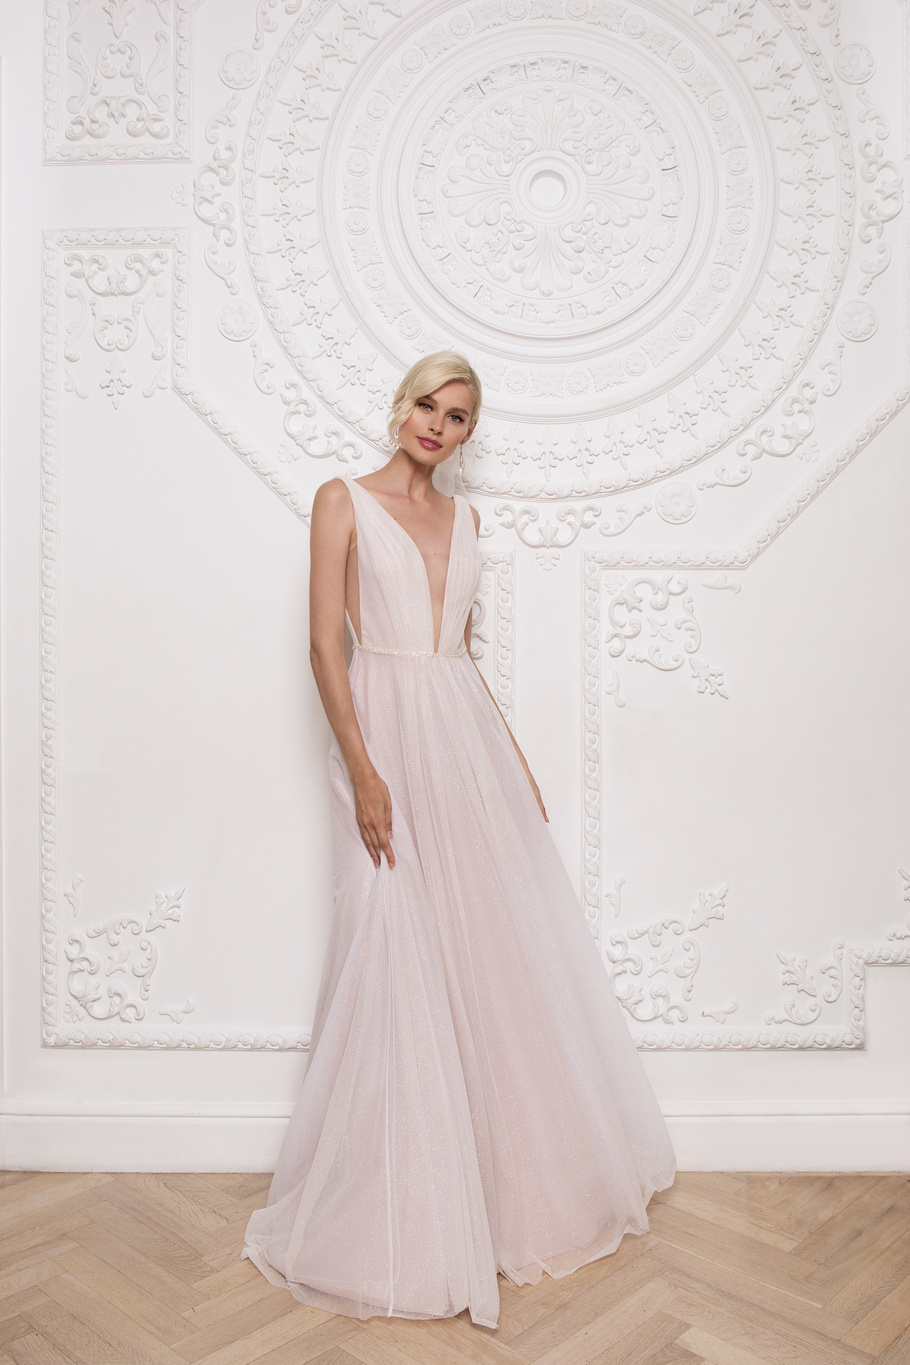 Купить свадебное платье «Джефина» Мэрри Марк из коллекции 2020 года в Екатеринбурге